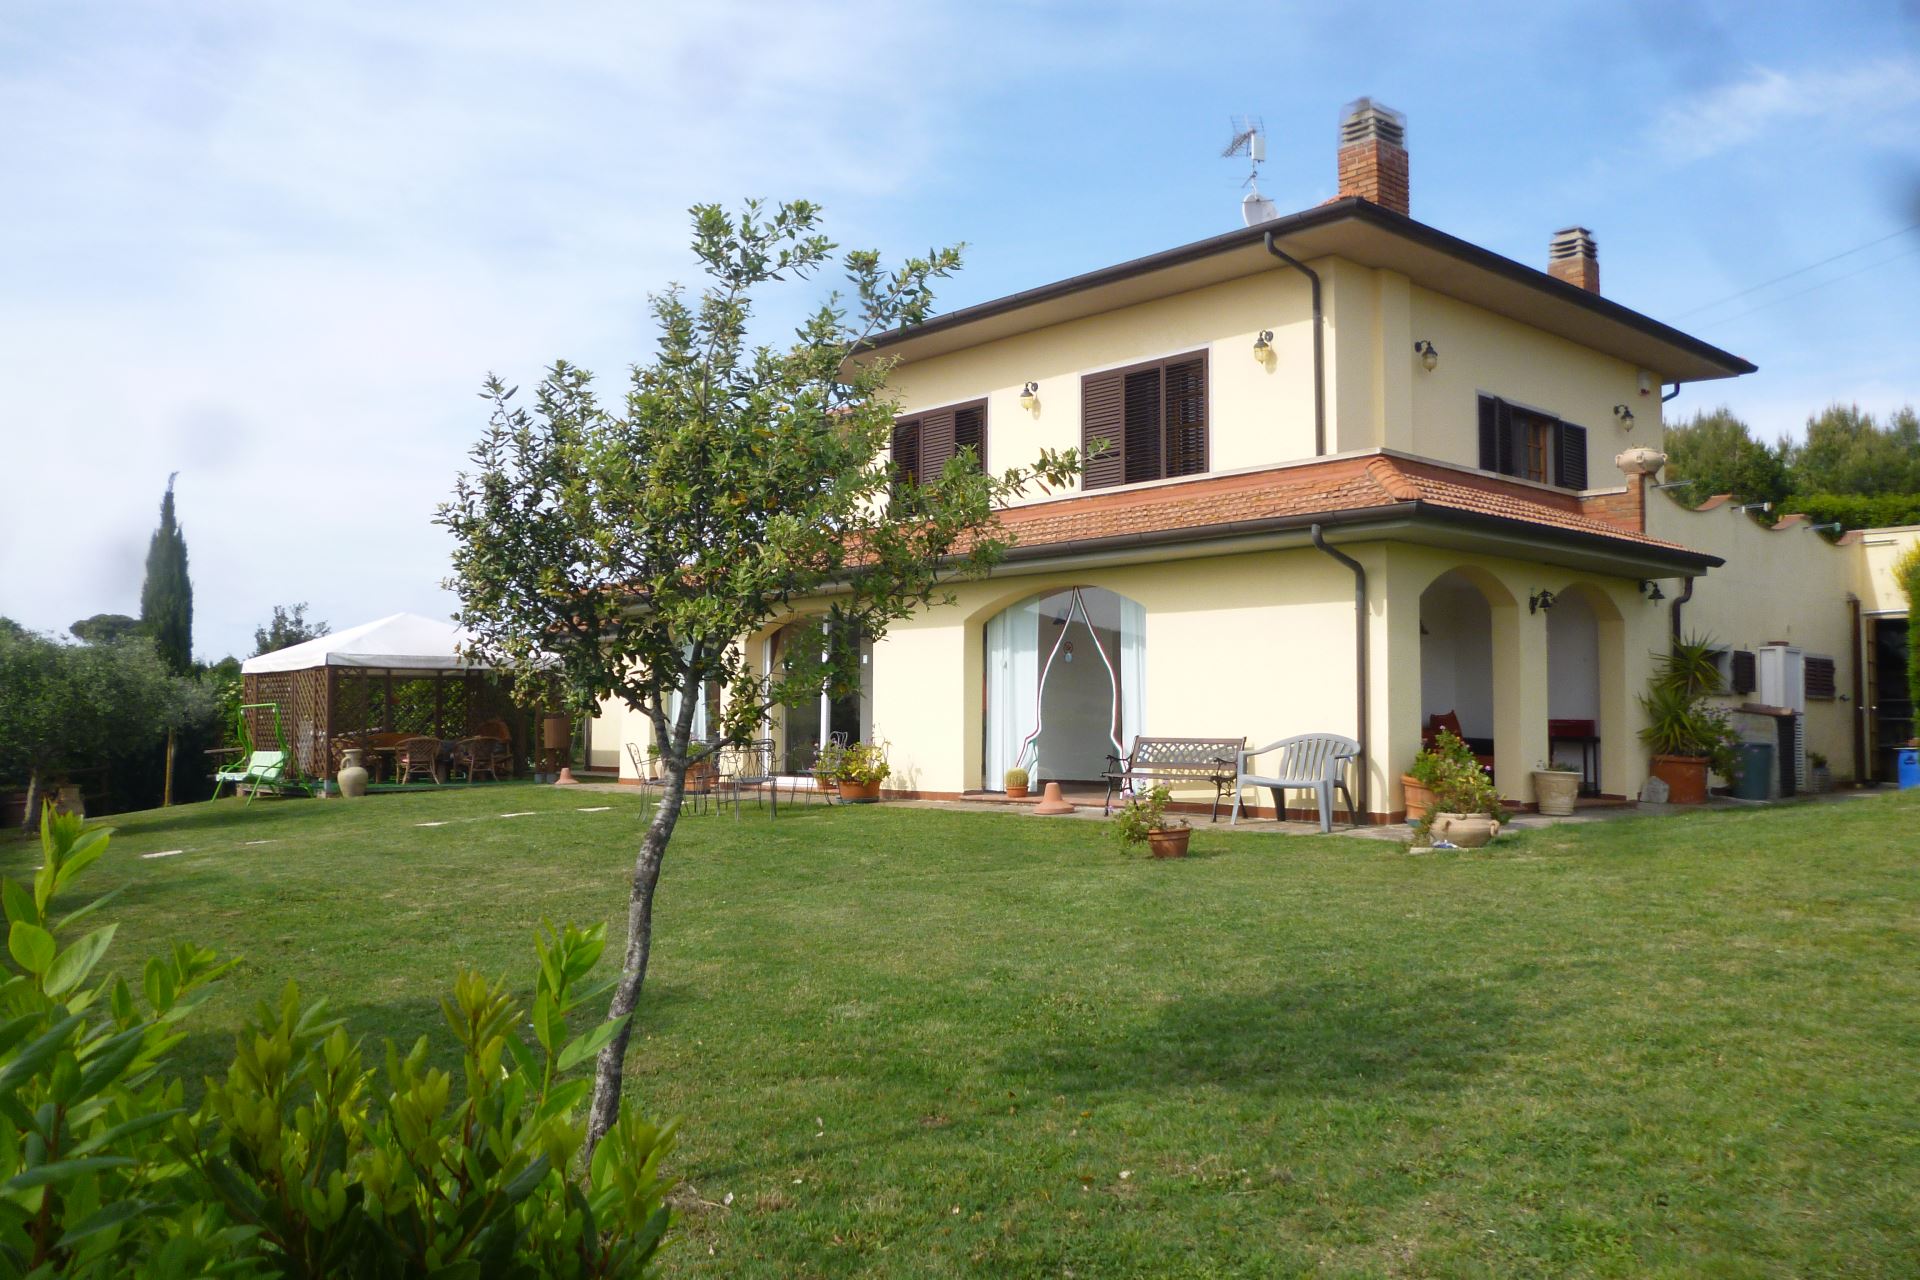 HOUSES ON THE COAST LA TAGLIOLA ROSIGNANO MARITTIMO TOSCANA